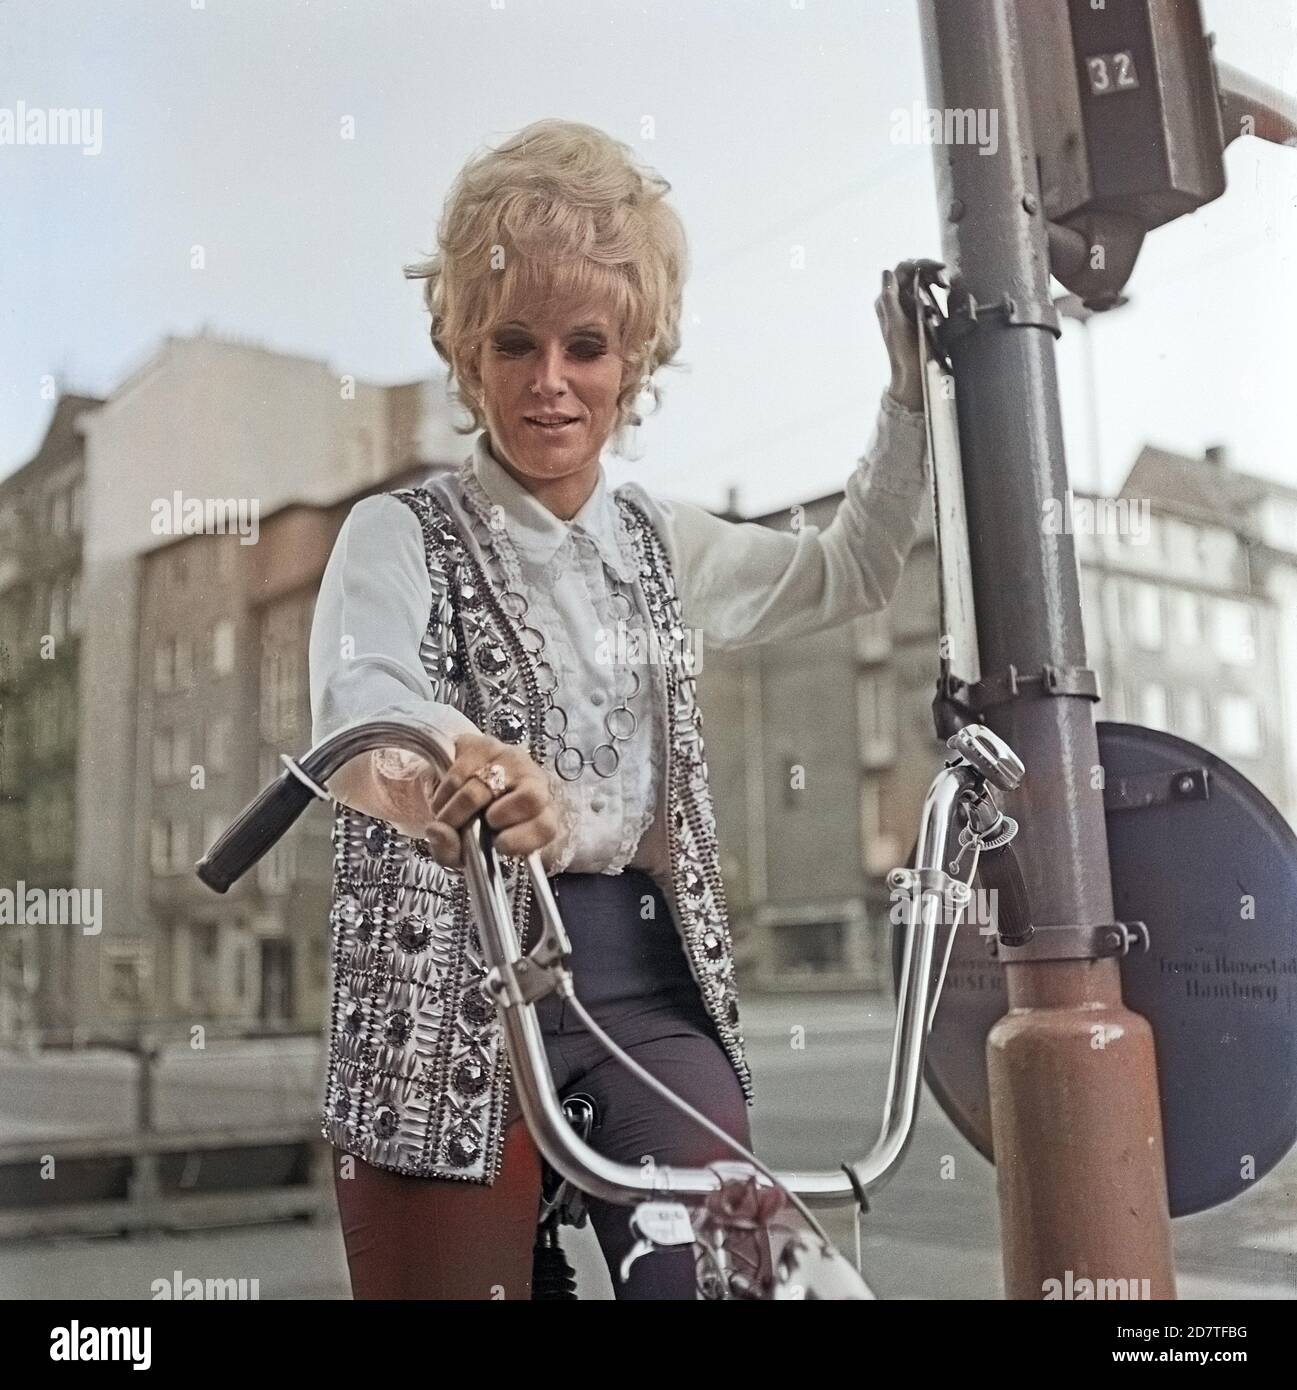 Dusty Springfield, britische Pop- und Soulsängerin, bei einem Besuch à Hambourg auf dem Fahrrad, Deutschland 1970. Chanteuse britannique de pop et d'âme Dusty Springfield à vélo lors d'une visite à Hambourg, Allemagne 1970. Banque D'Images